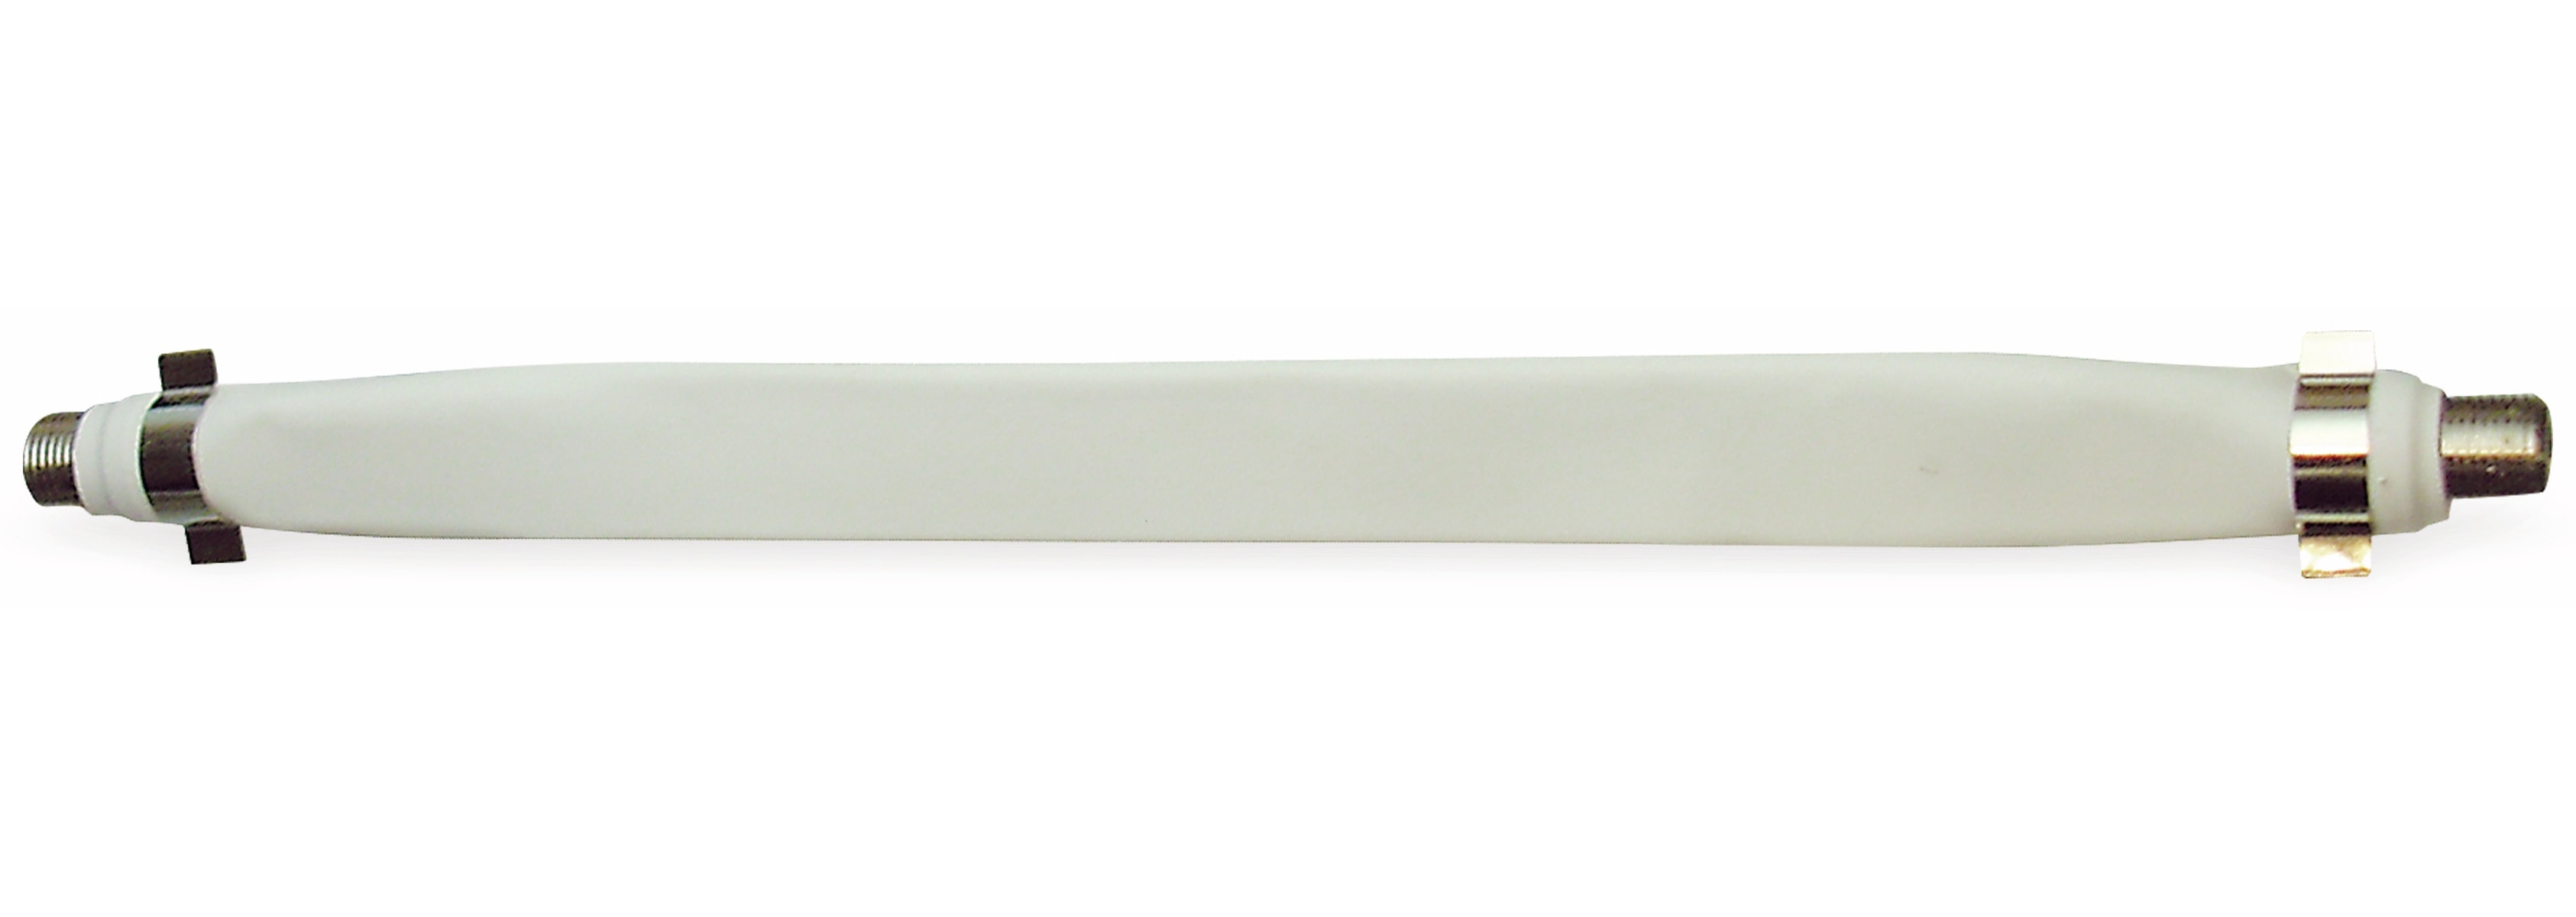 S-IMPULS HF-Flachbandkabel, 0,2 m, weiß